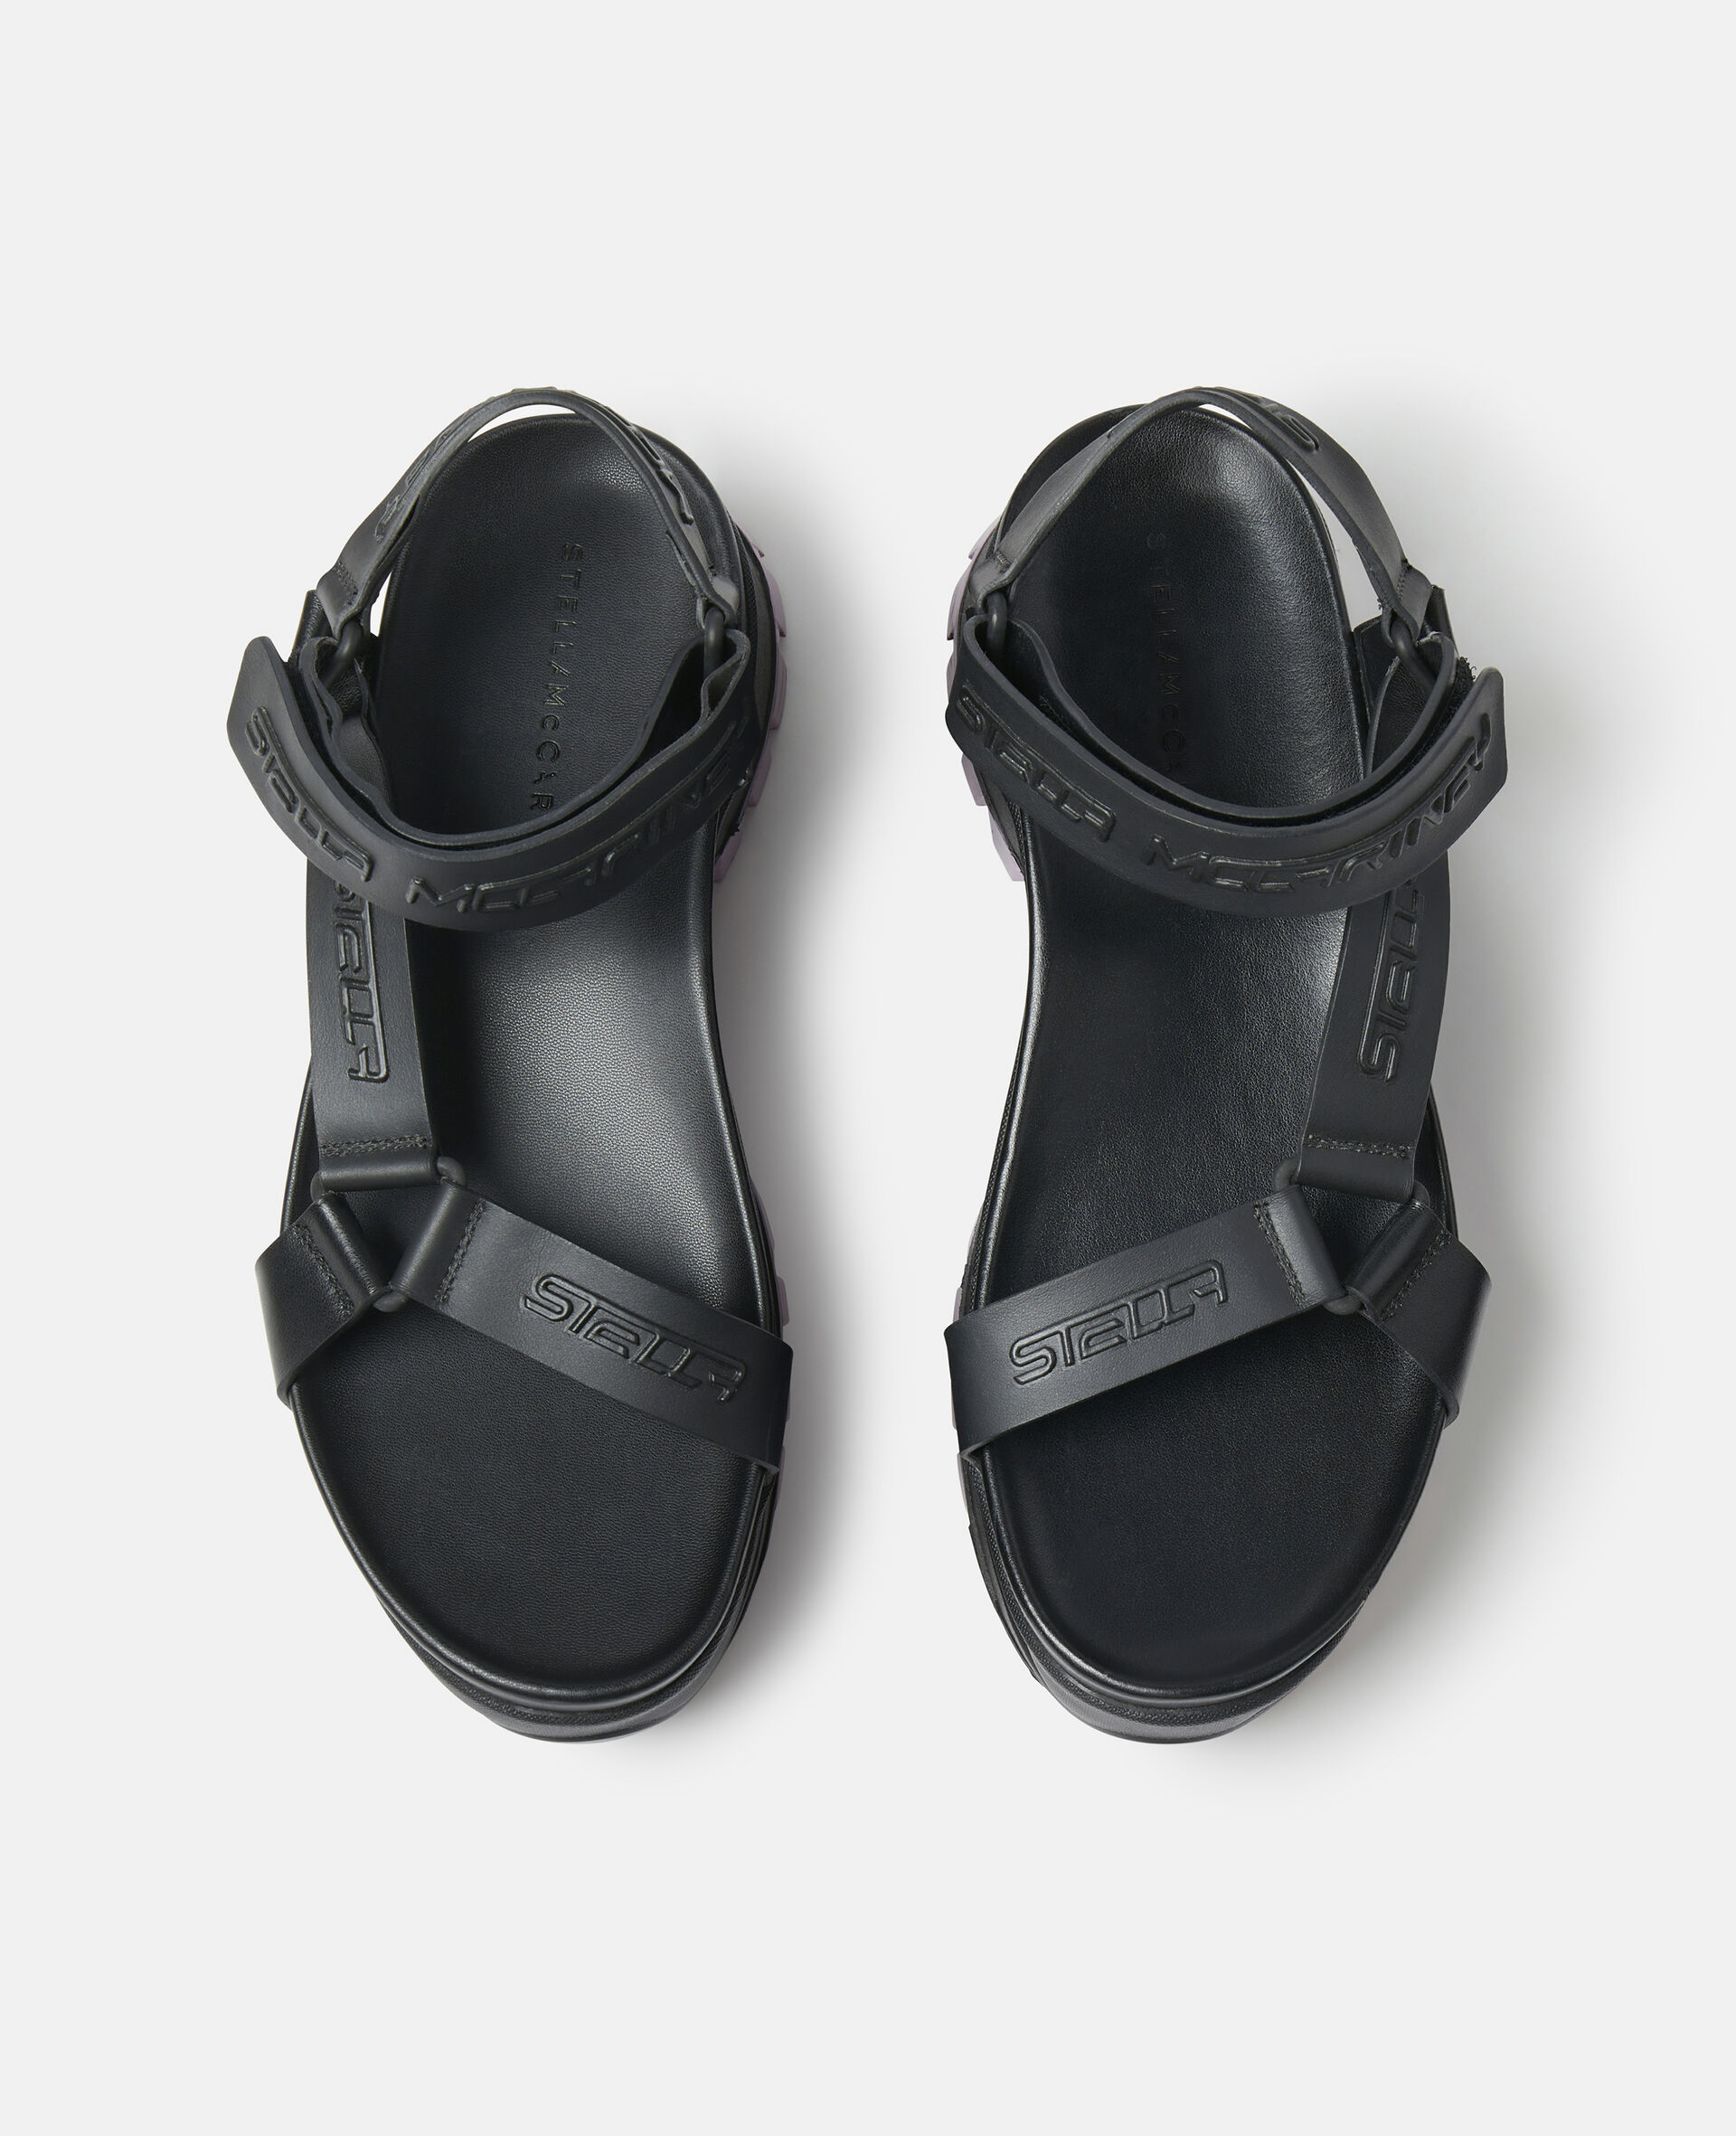 Trace Strap Sandals-Black-large image number 3